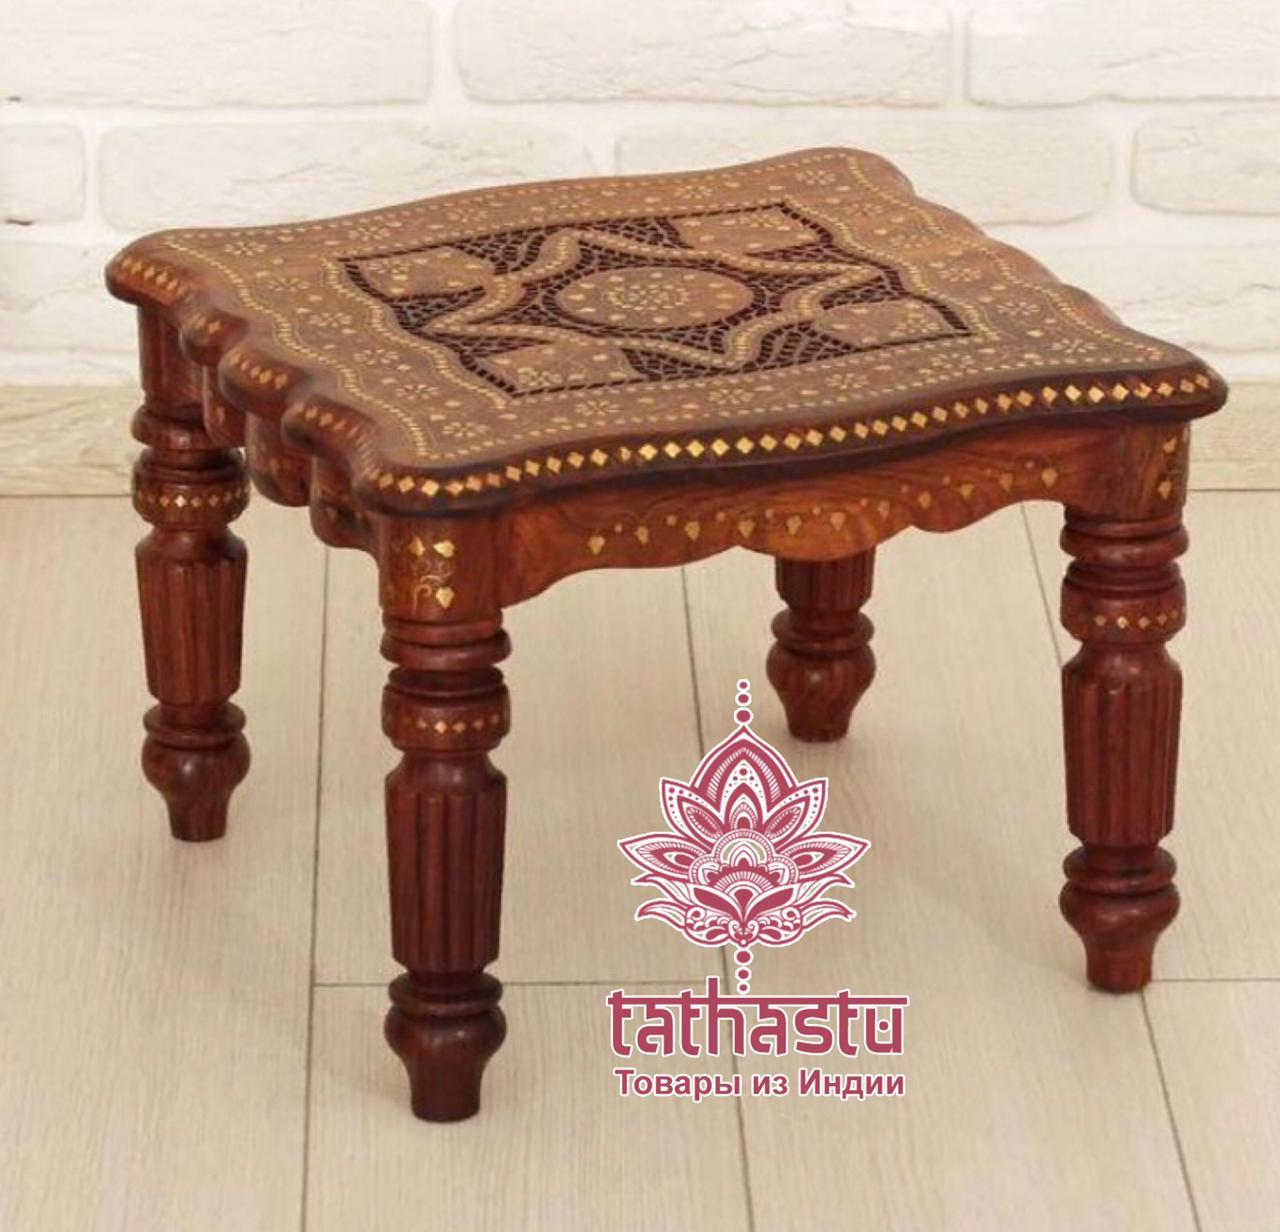 Tathastu Деревянный стол-табурет. Tathastu товары и индии